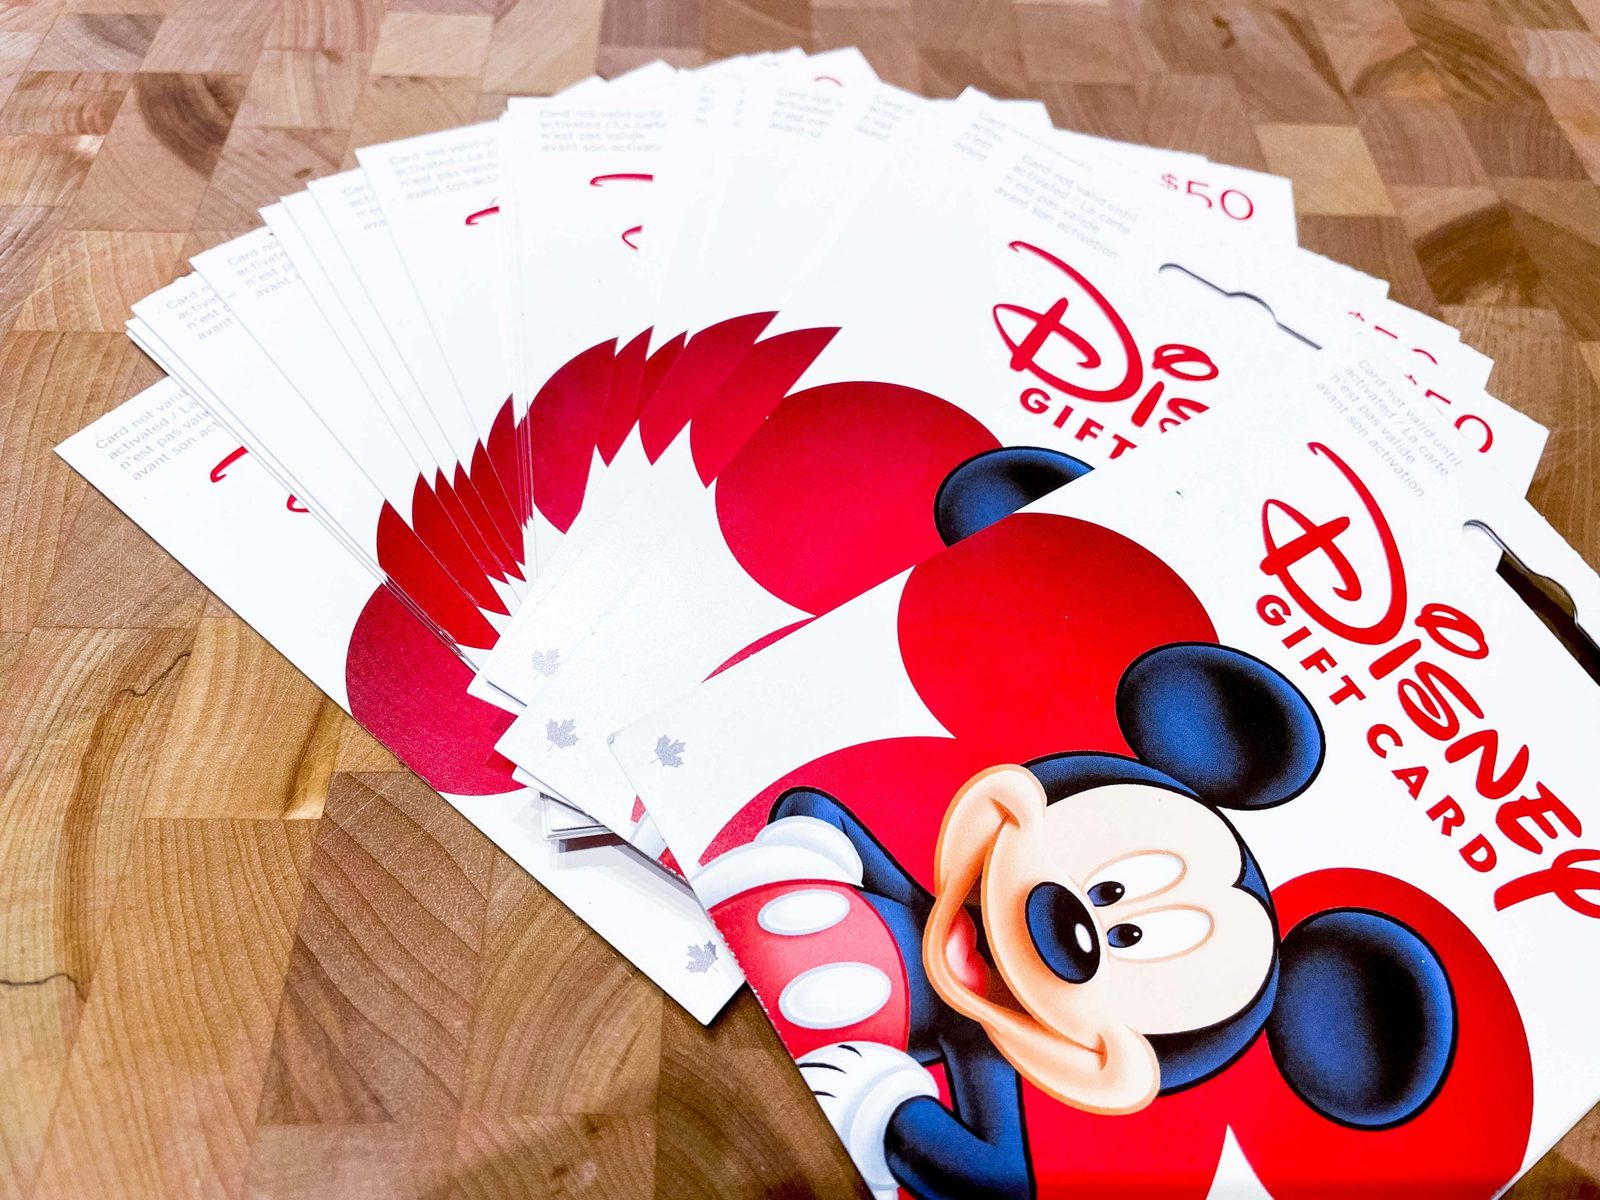 Disney+ : cette carte cadeau permet d'offrir un an d'abonnement à vos amis